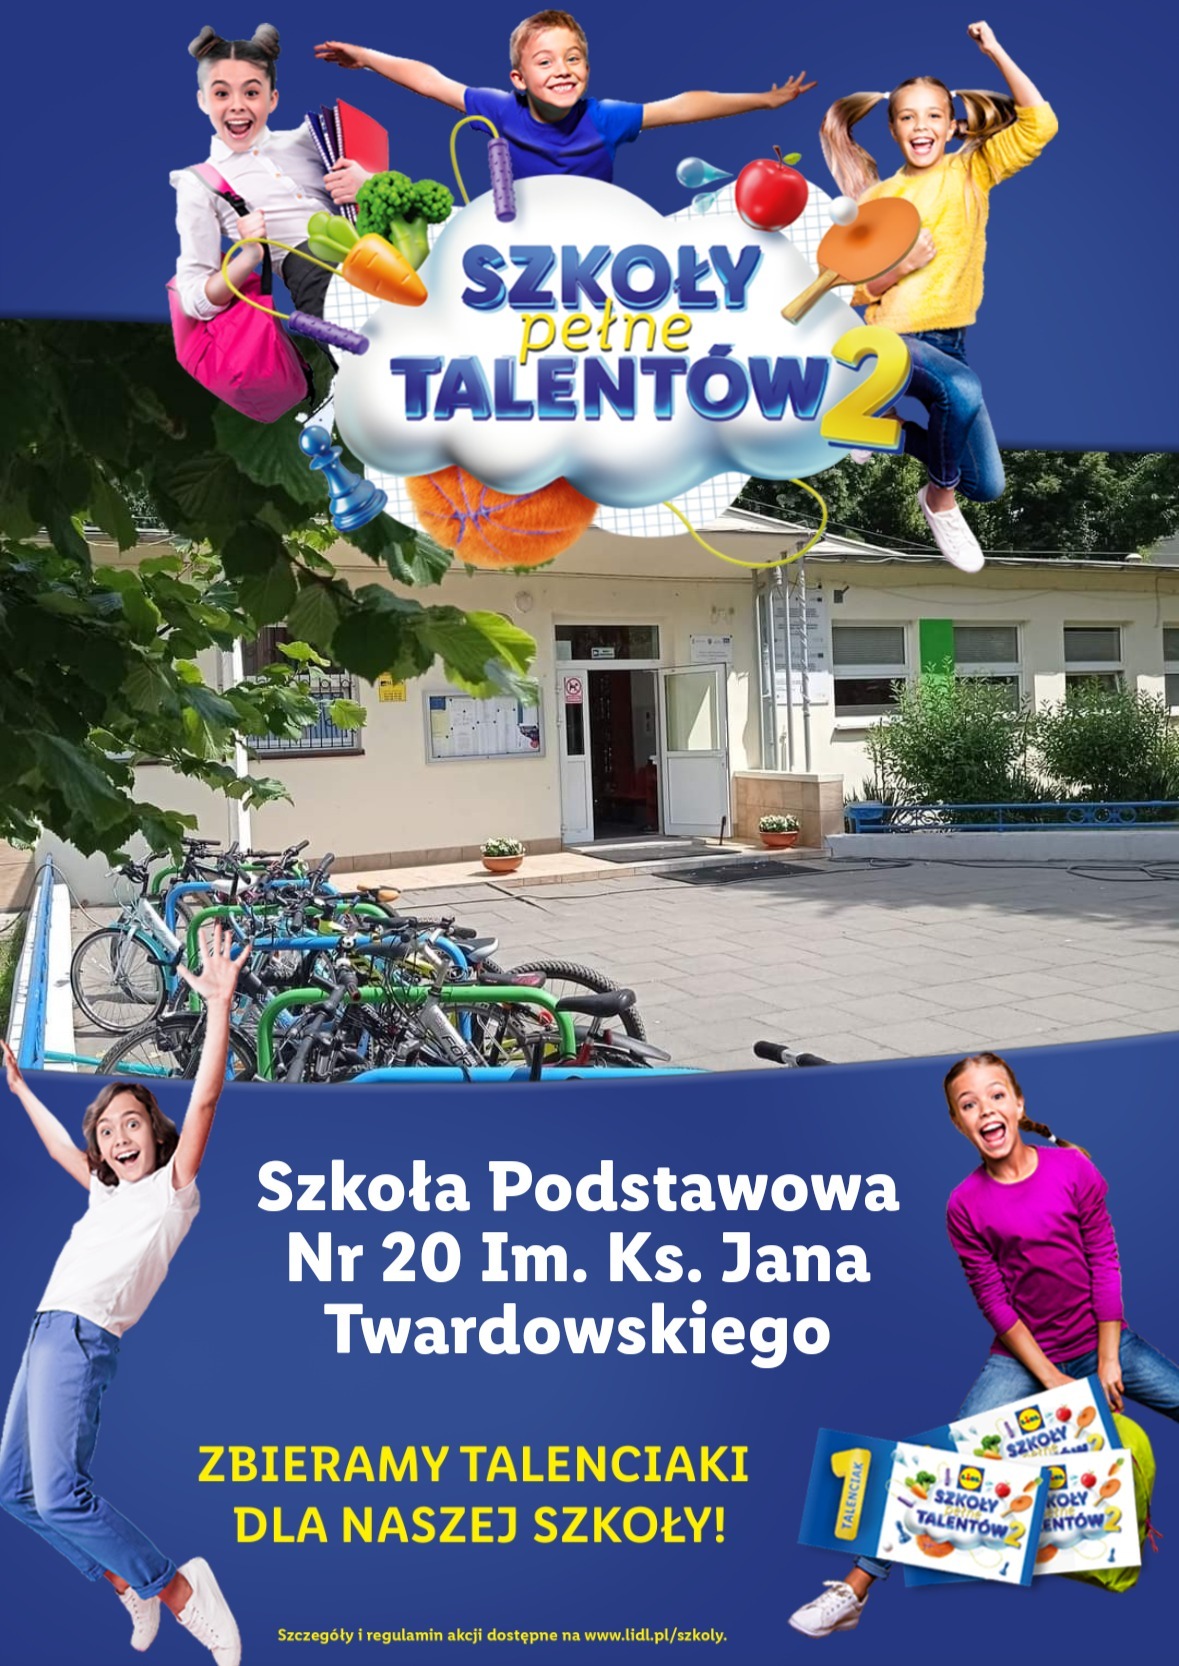 plakat Szkoły Talentów, czyli Lidlowskie Talenciaki